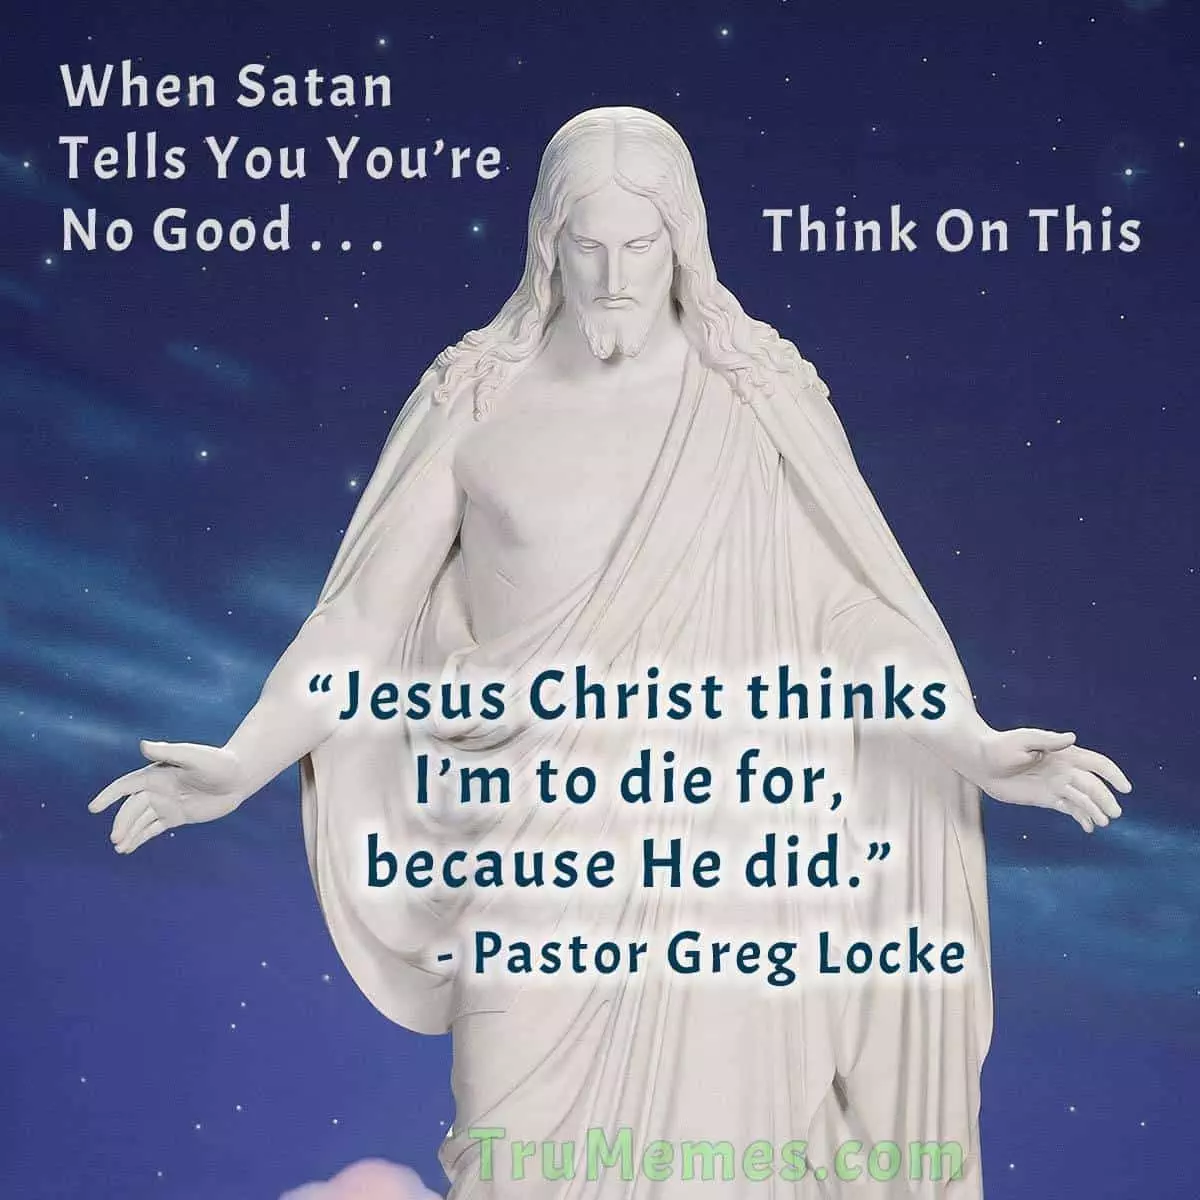 Jesus Christ thinks I'm to die for, Pastor Greg Locke